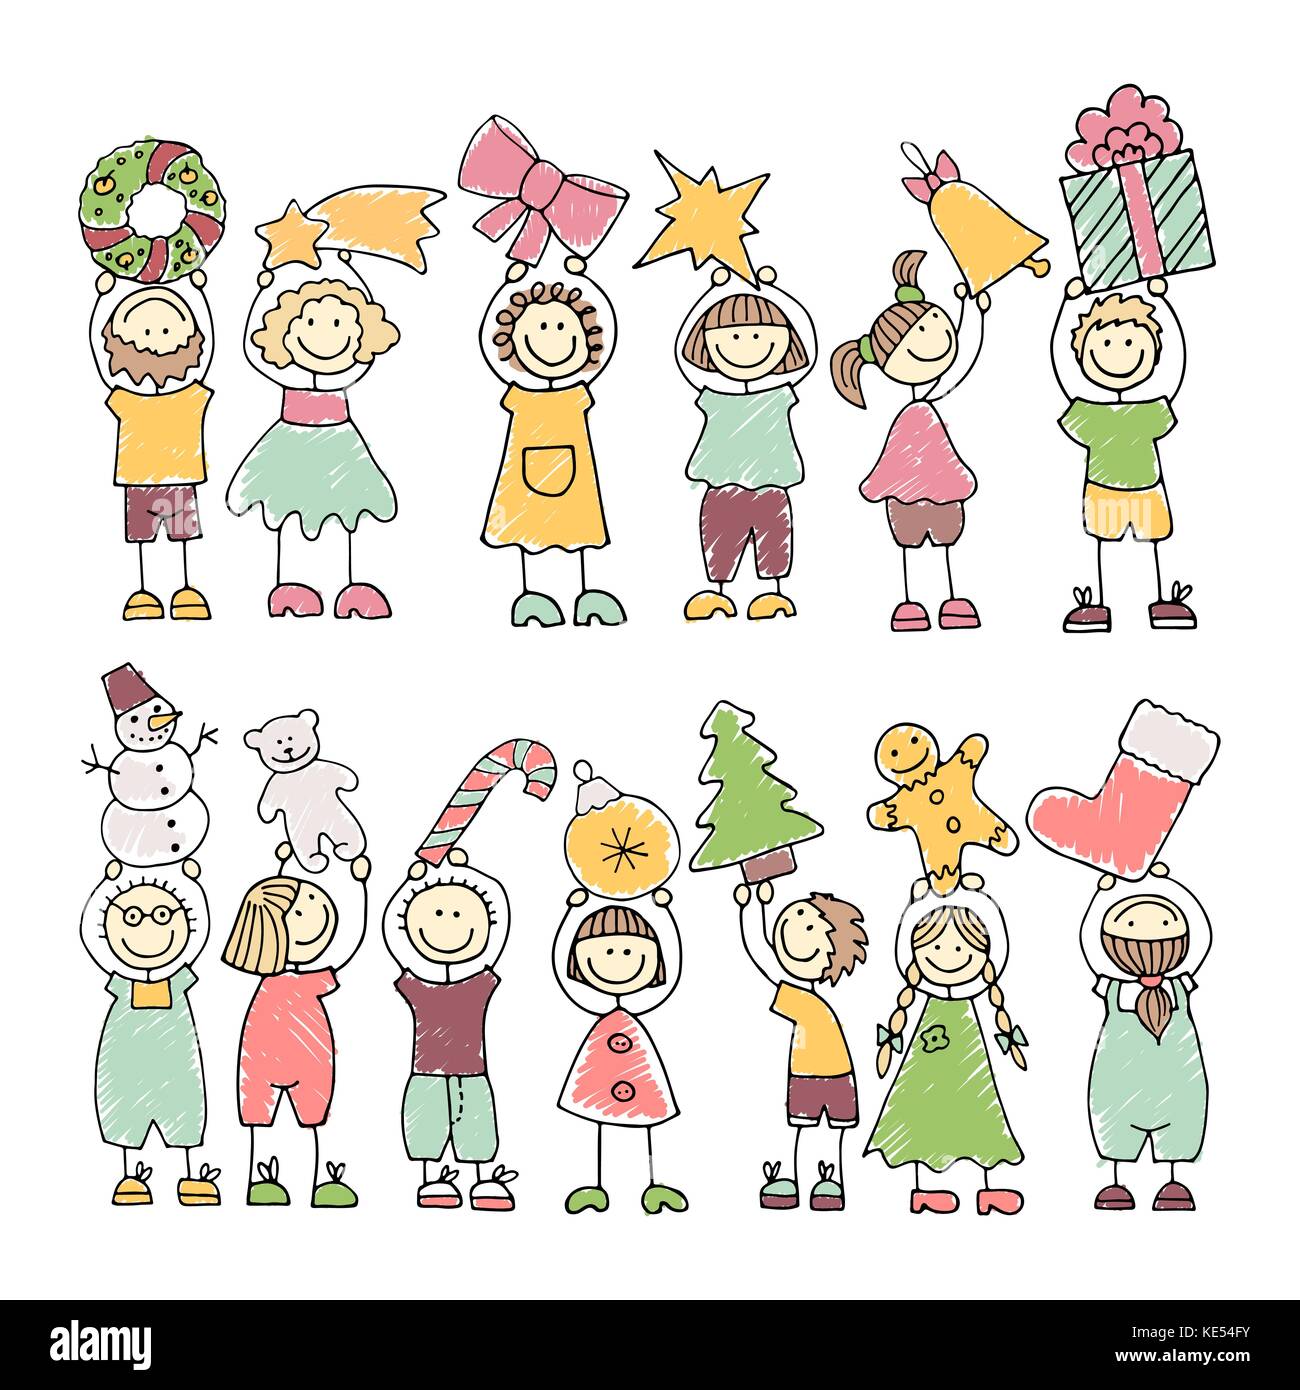 Vektor einrichten der farbigen Symbole der glücklichen Kinder. Frohe Weihnachten Stock Vektor